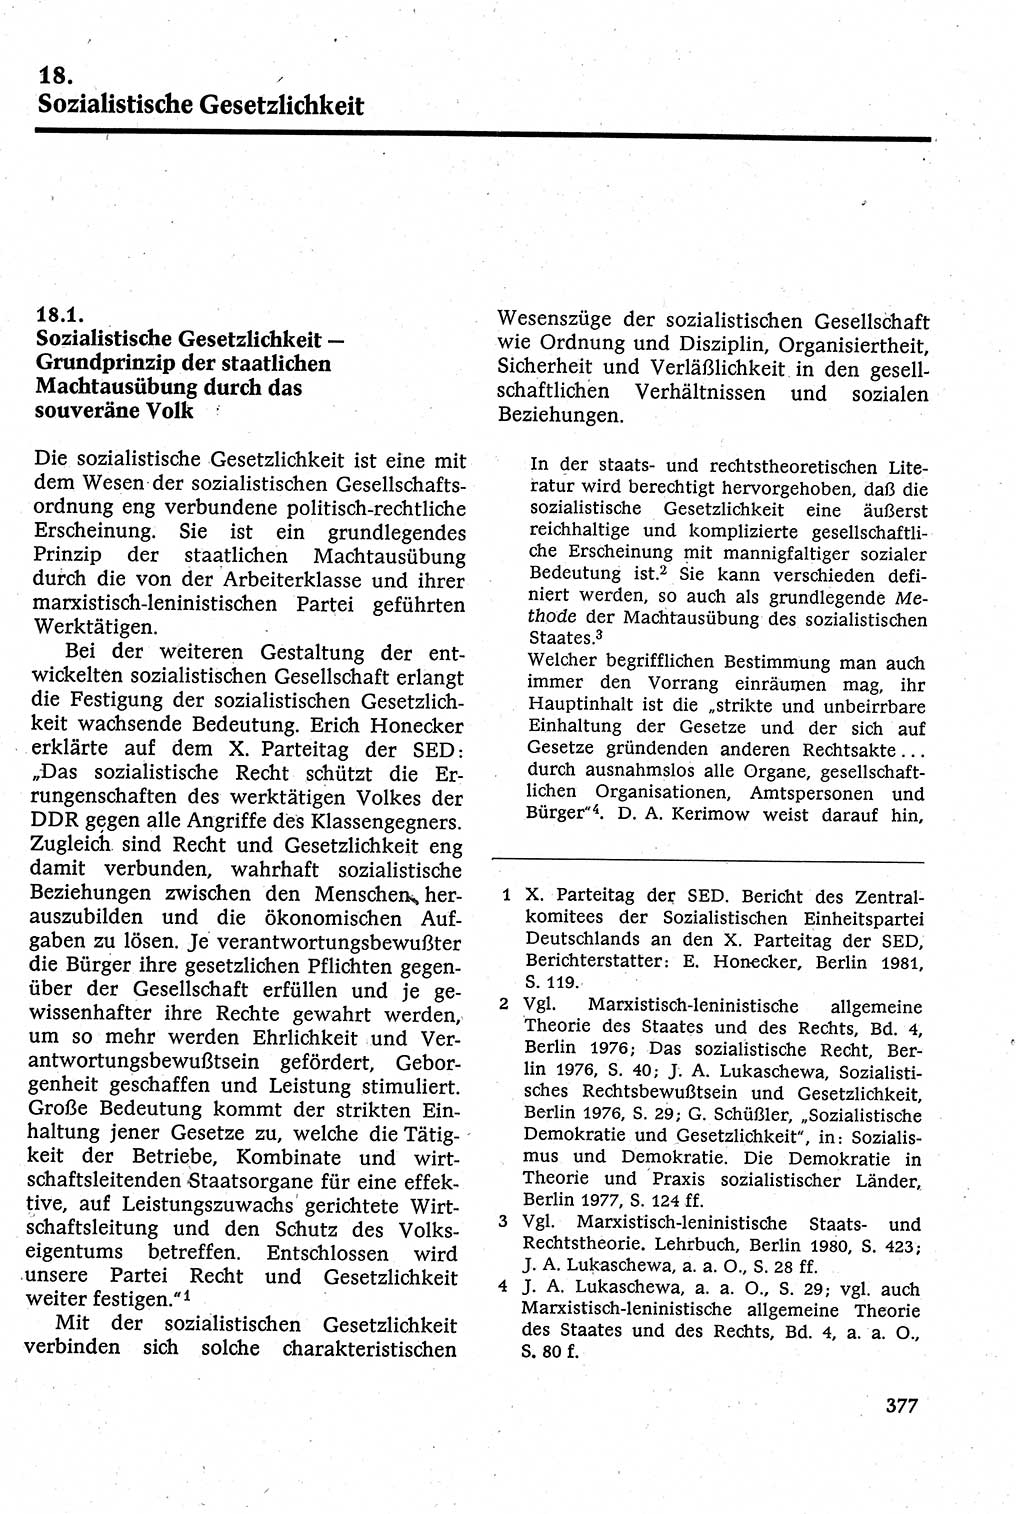 Staatsrecht der DDR [Deutsche Demokratische Republik (DDR)], Lehrbuch 1984, Seite 377 (St.-R. DDR Lb. 1984, S. 377)